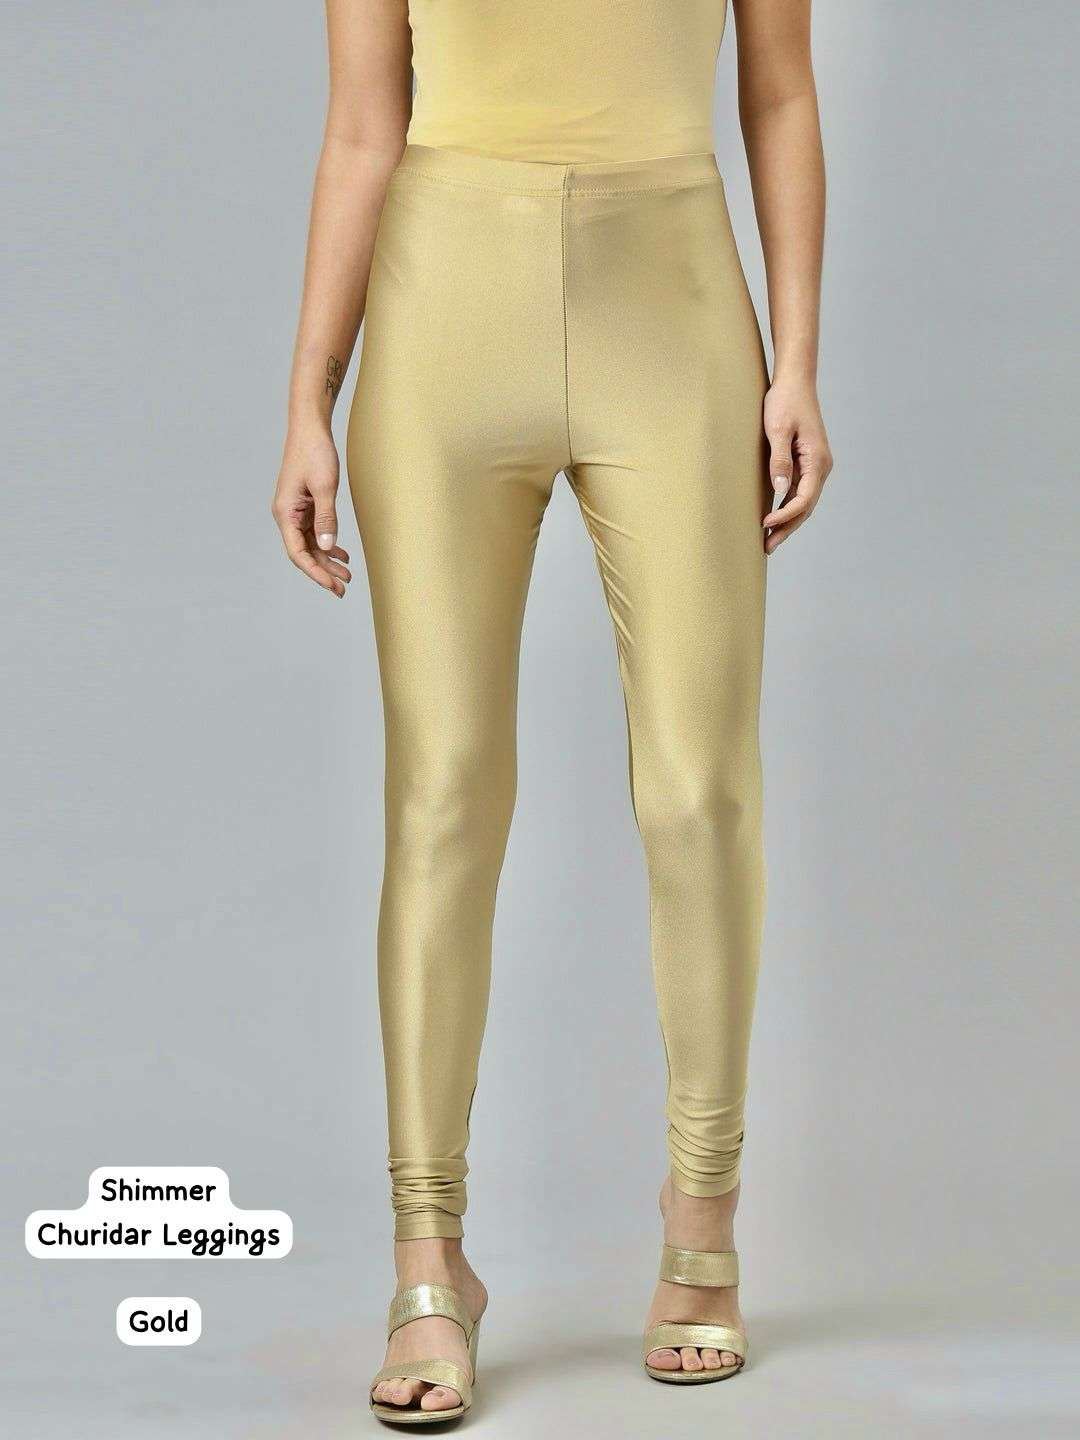 code shimmer leggings churidar length shimmer leggings 2 colours fabric shimmer nylon size l to 5xl length 43 leggings 